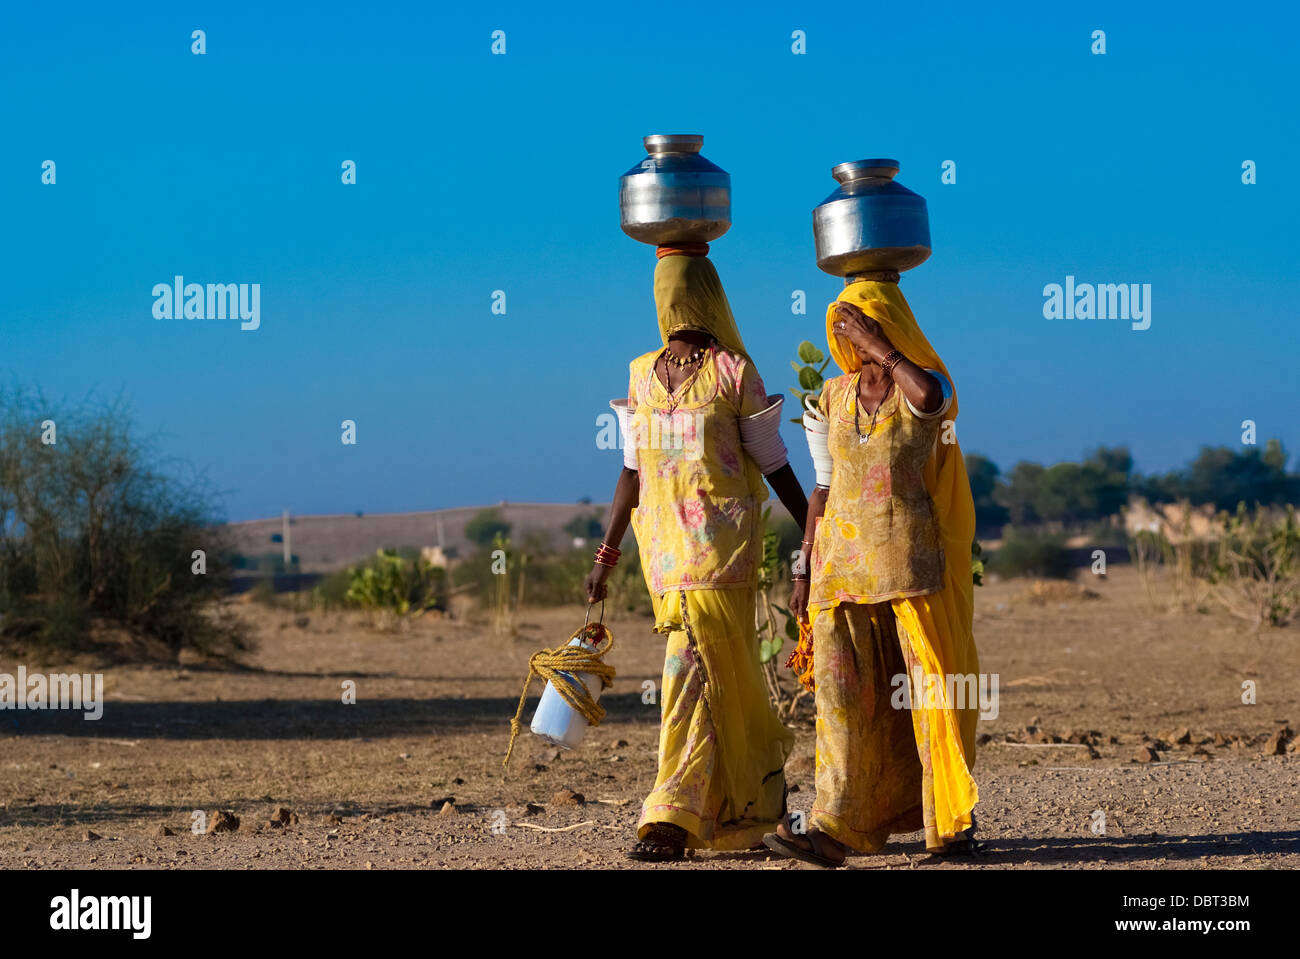 Frauen schleppen einen Wasserkrug auf dem Kopf am 27. Februar 2013 in Rajasthan, Indien, aufgrund des Fehlens von Leitungswasser in der Gegend. Stockfoto